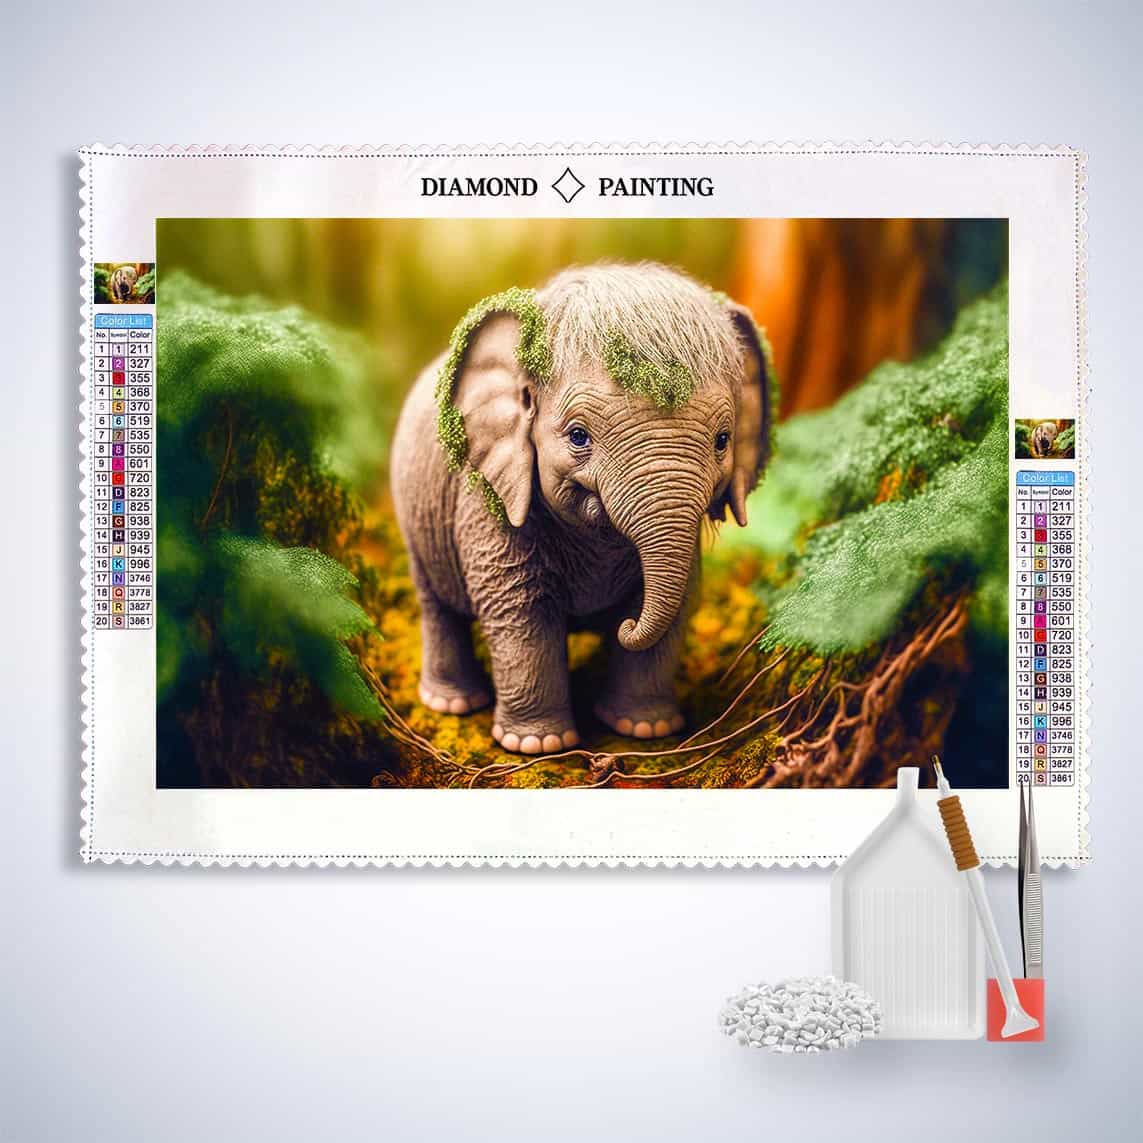 Diamond Painting - Kleiner Elefant im Wald - gedruckt in Ultra-HD - Elefant, Horizontal, Neu eingetroffen, Tiere